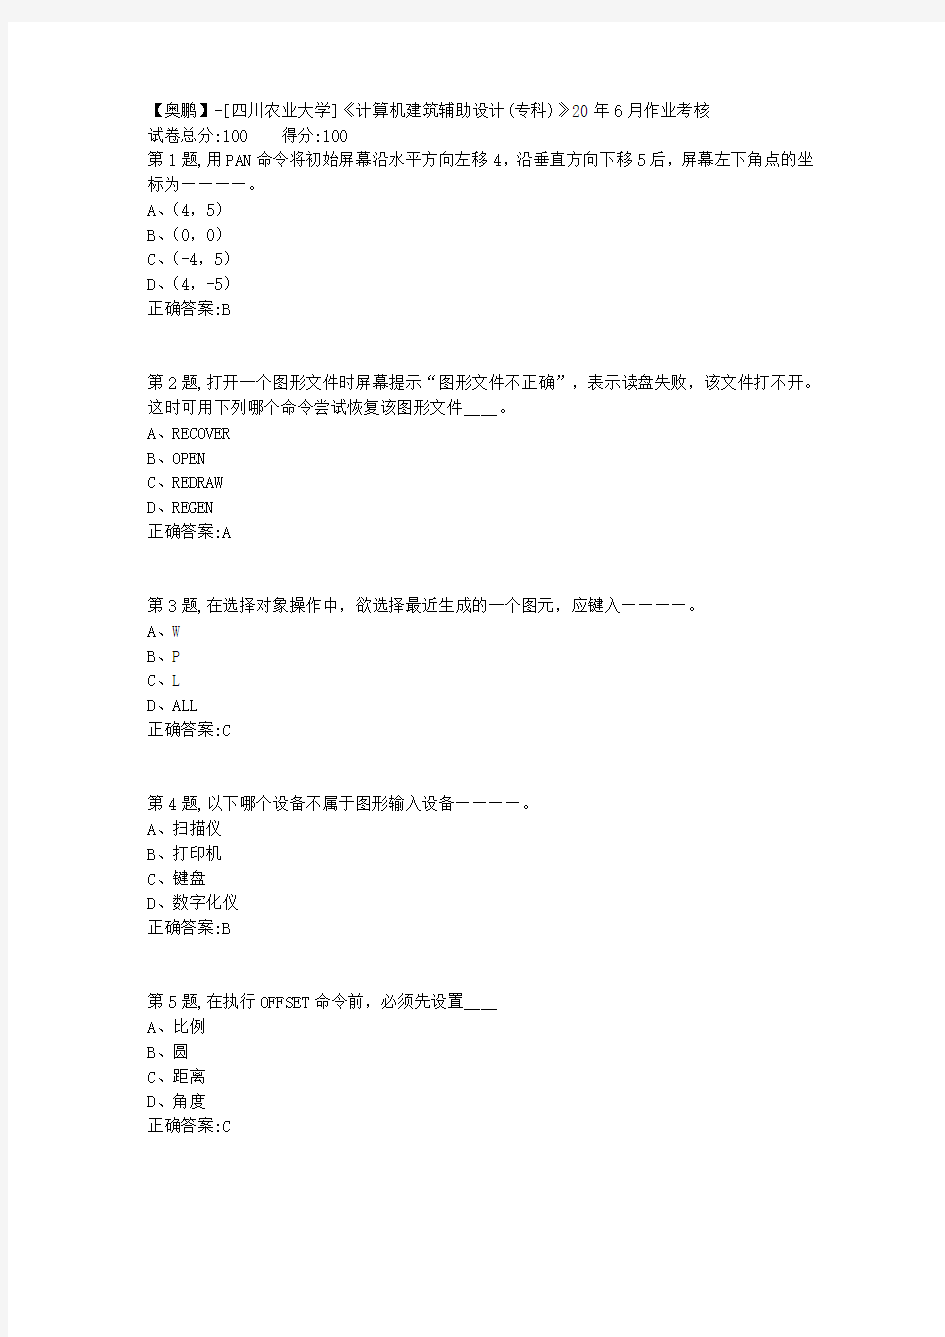 [四川农业大学]《计算机建筑辅助设计(专科)》20年6月作业考核